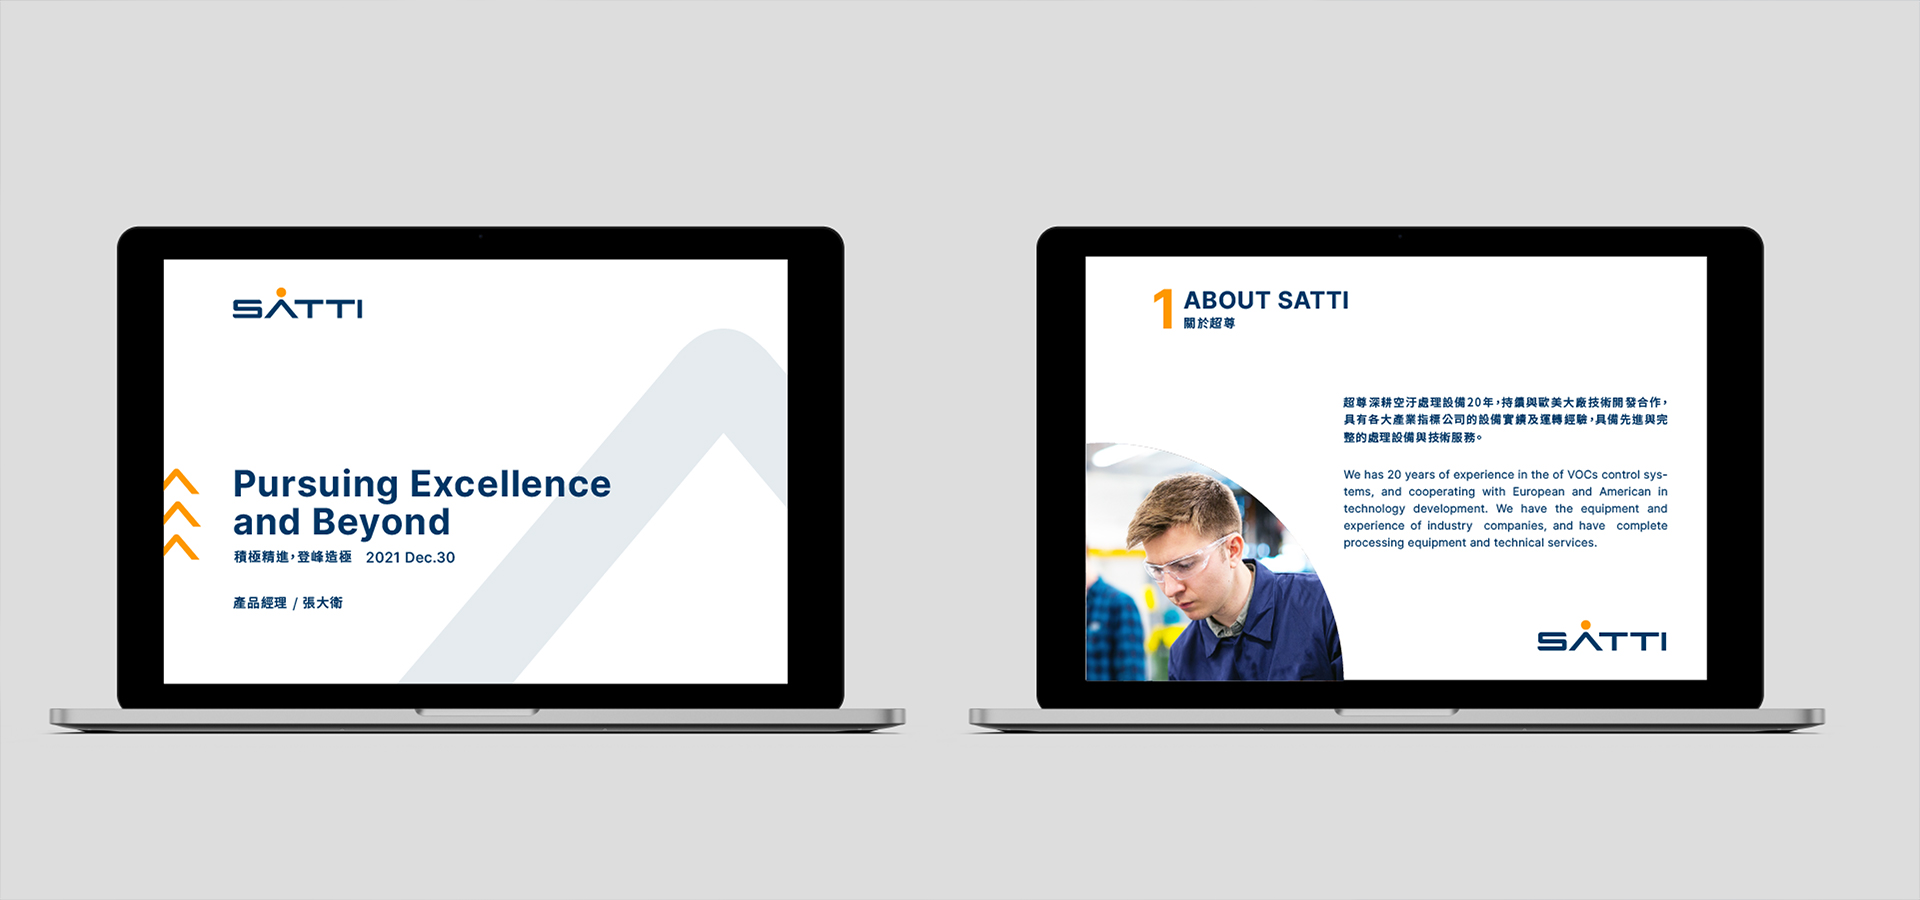 SATTI slide06 | 超尊科技品牌再造專案 | Labsology 法博思品牌顧問公司